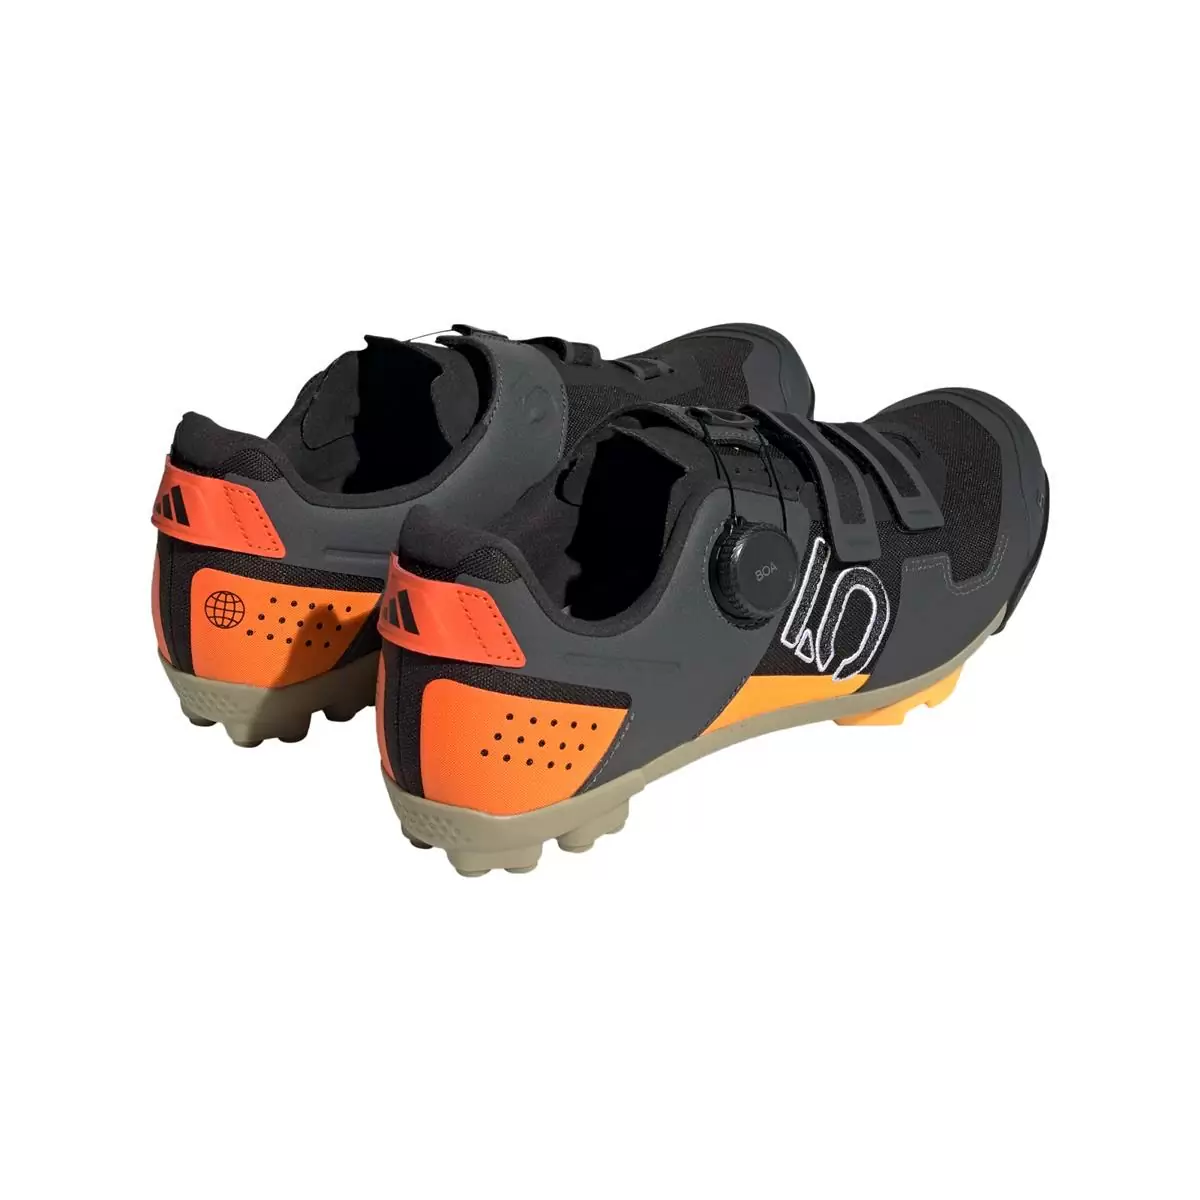 Clip 5.10 Kestrel Boa MTB Shoes Black/Orange Size 44 #4